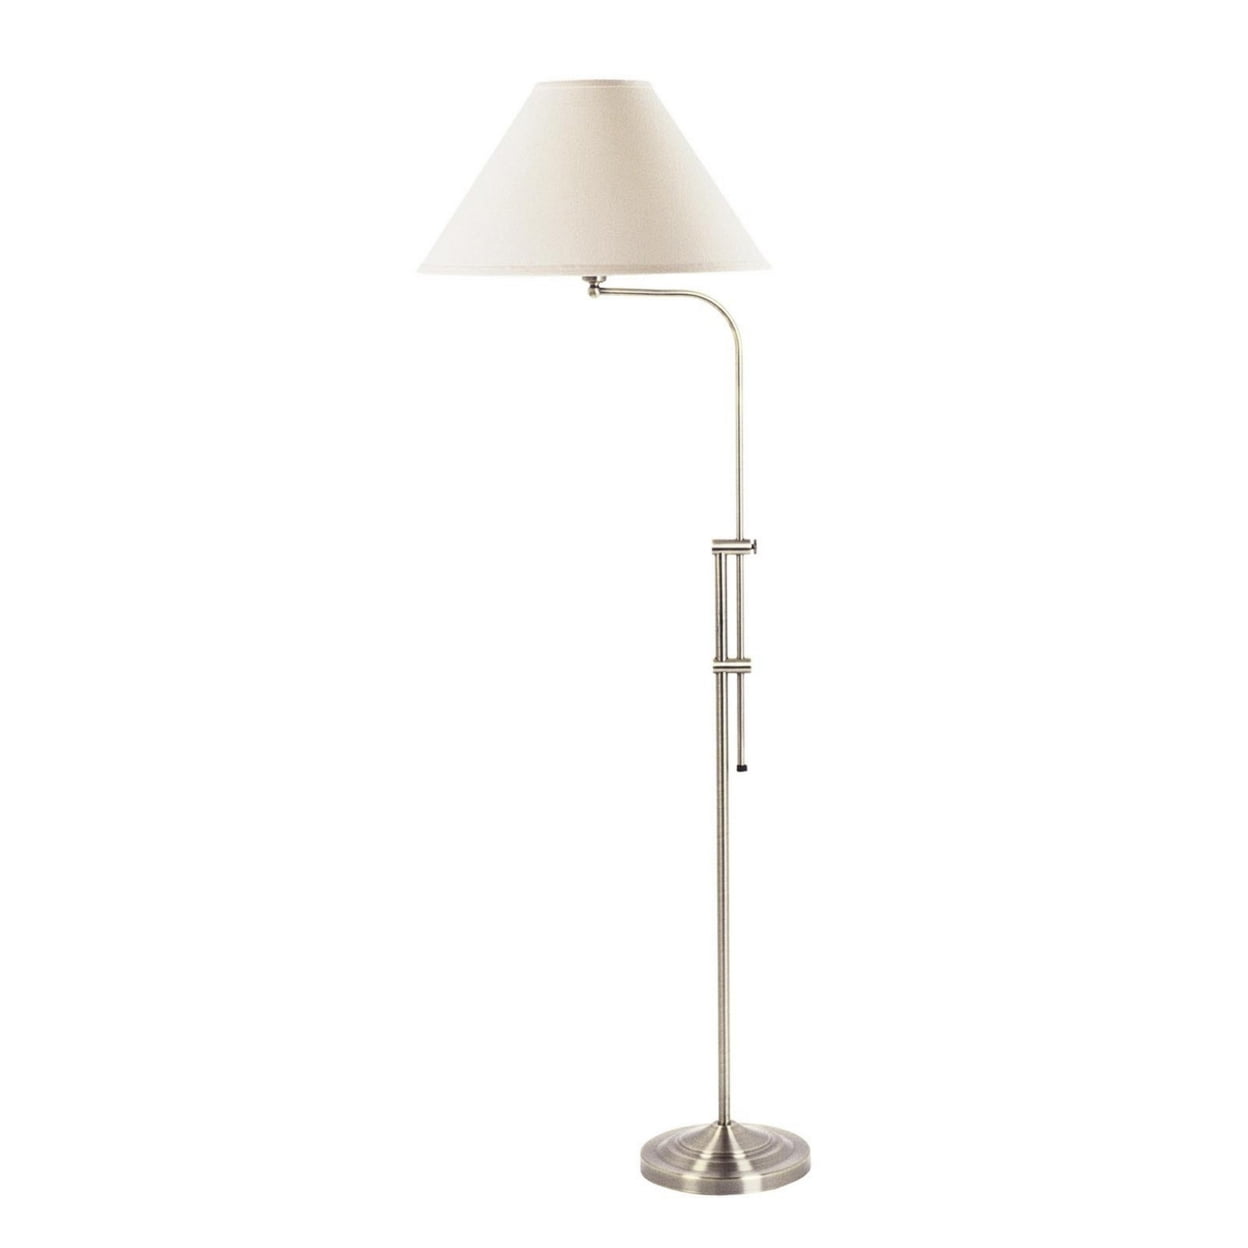 Picture of Benjara BM220821 3 Way Metal Floor Lamp with & Adjustable Height Mechanism&#44; Silver